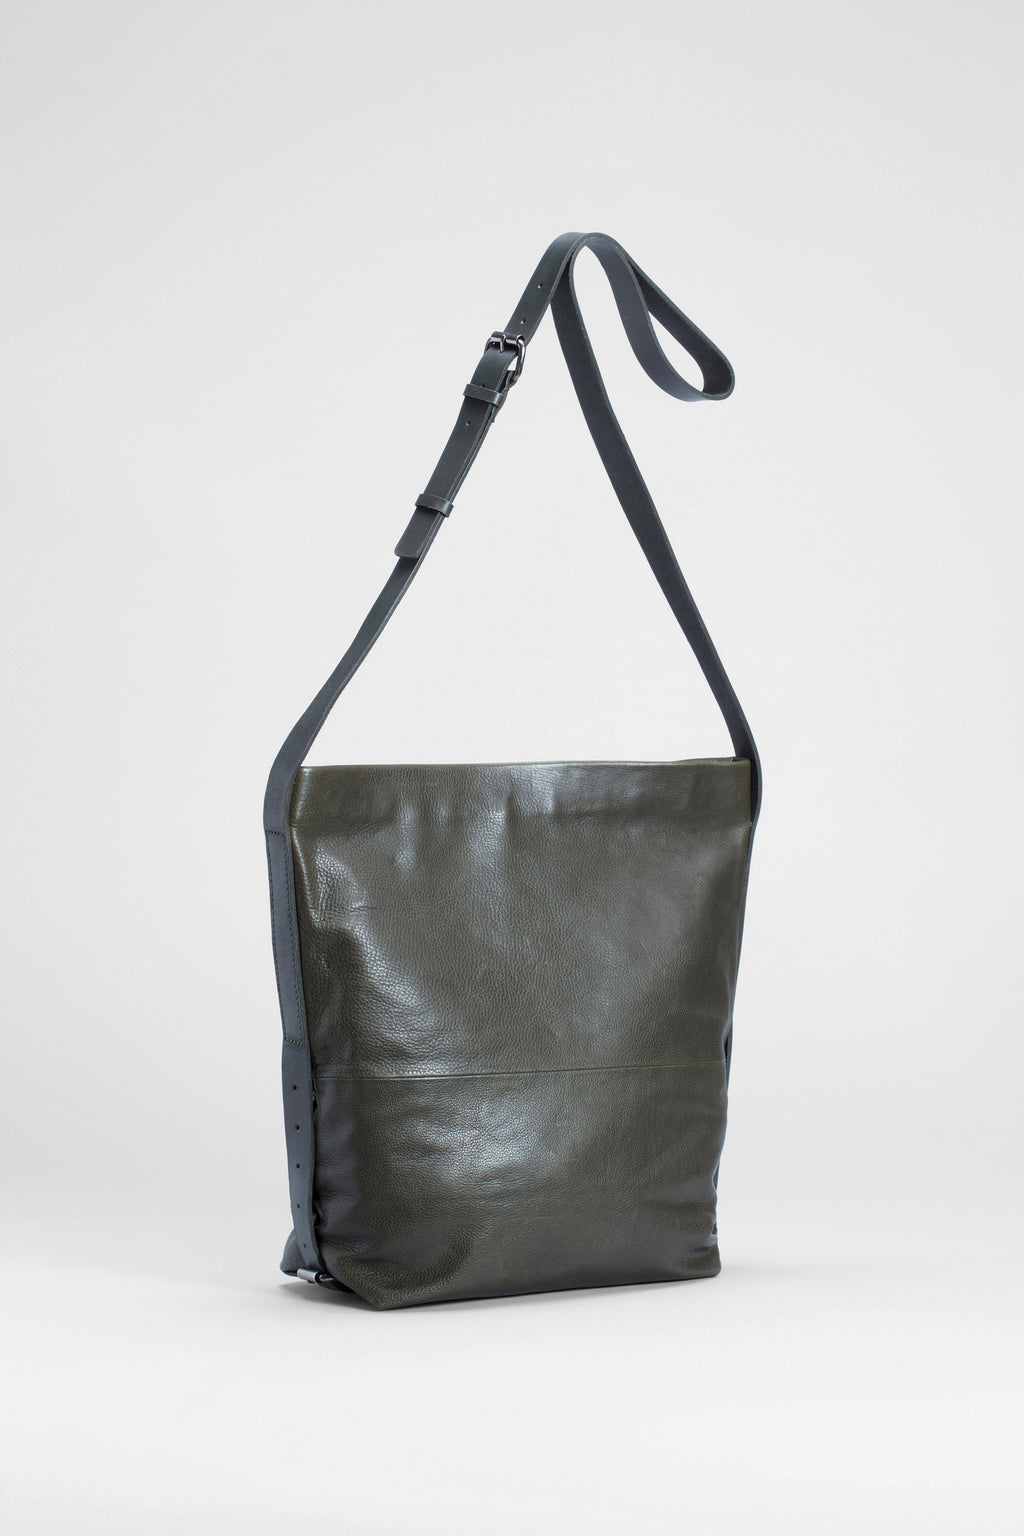 Fiola Bag by ELK: Designed in Melbourne | ELK Australia